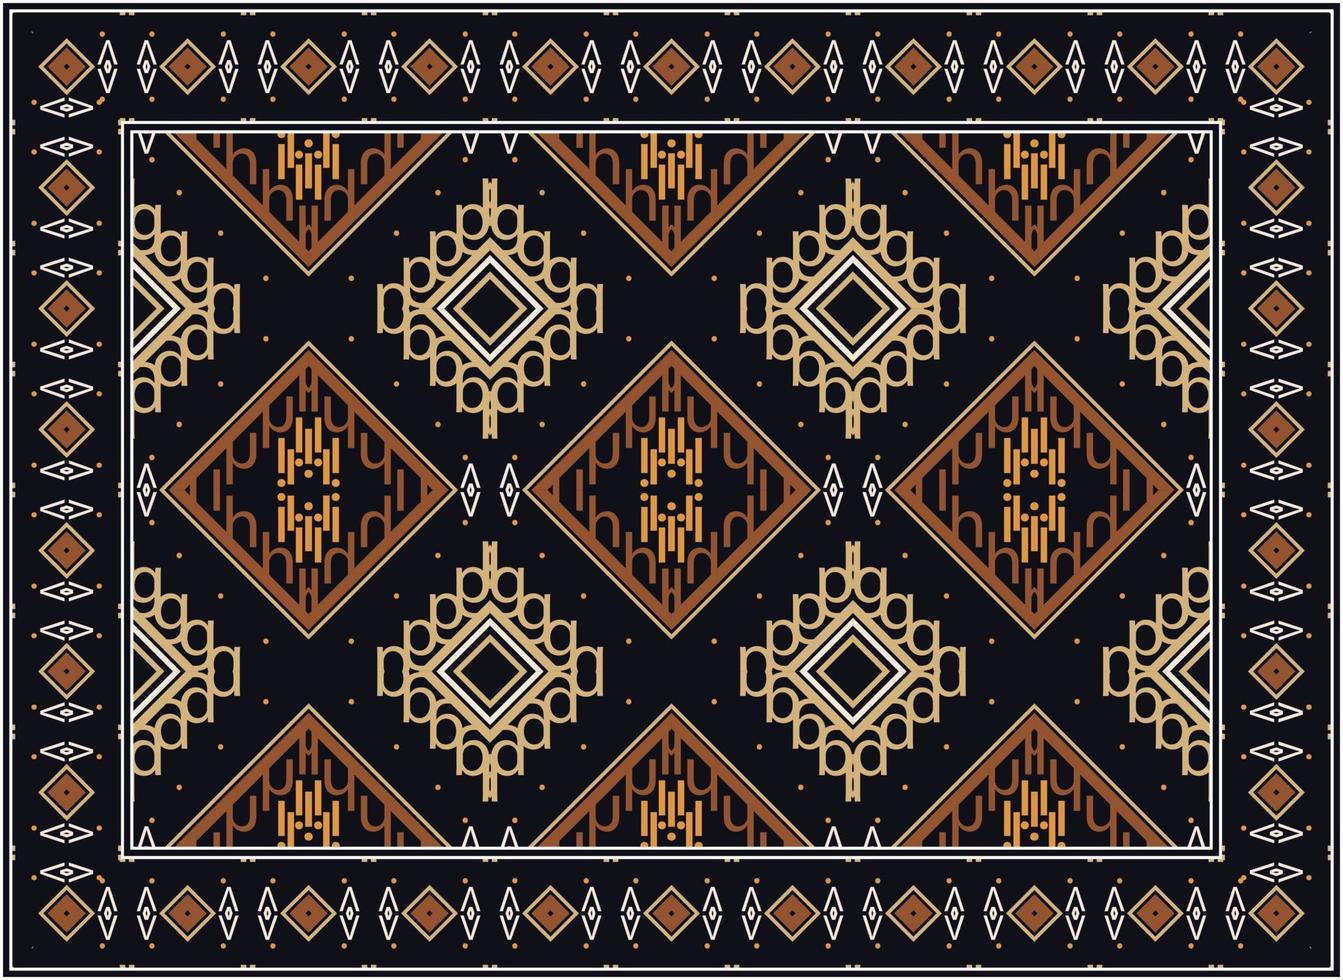 antico persiano tappeto, scandinavo persiano tappeto moderno africano etnico azteco stile design per Stampa tessuto tappeti, asciugamani, fazzoletti, sciarpe tappeto, vettore